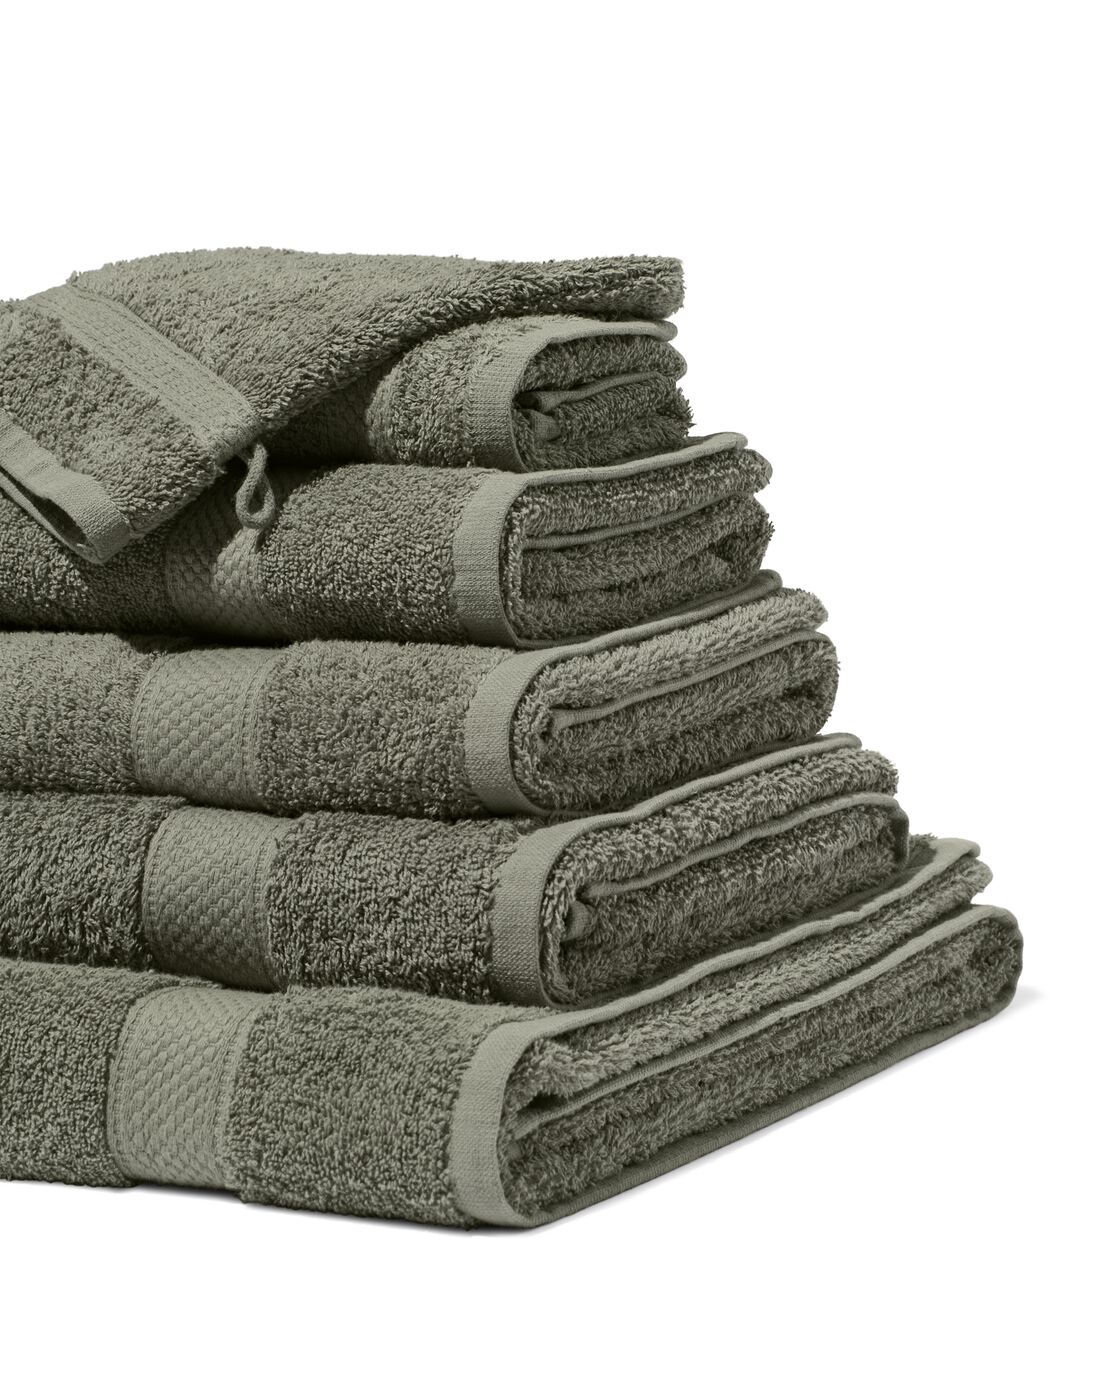 HEMA Handdoeken Zware Kwaliteit Legergroen (legergroen)